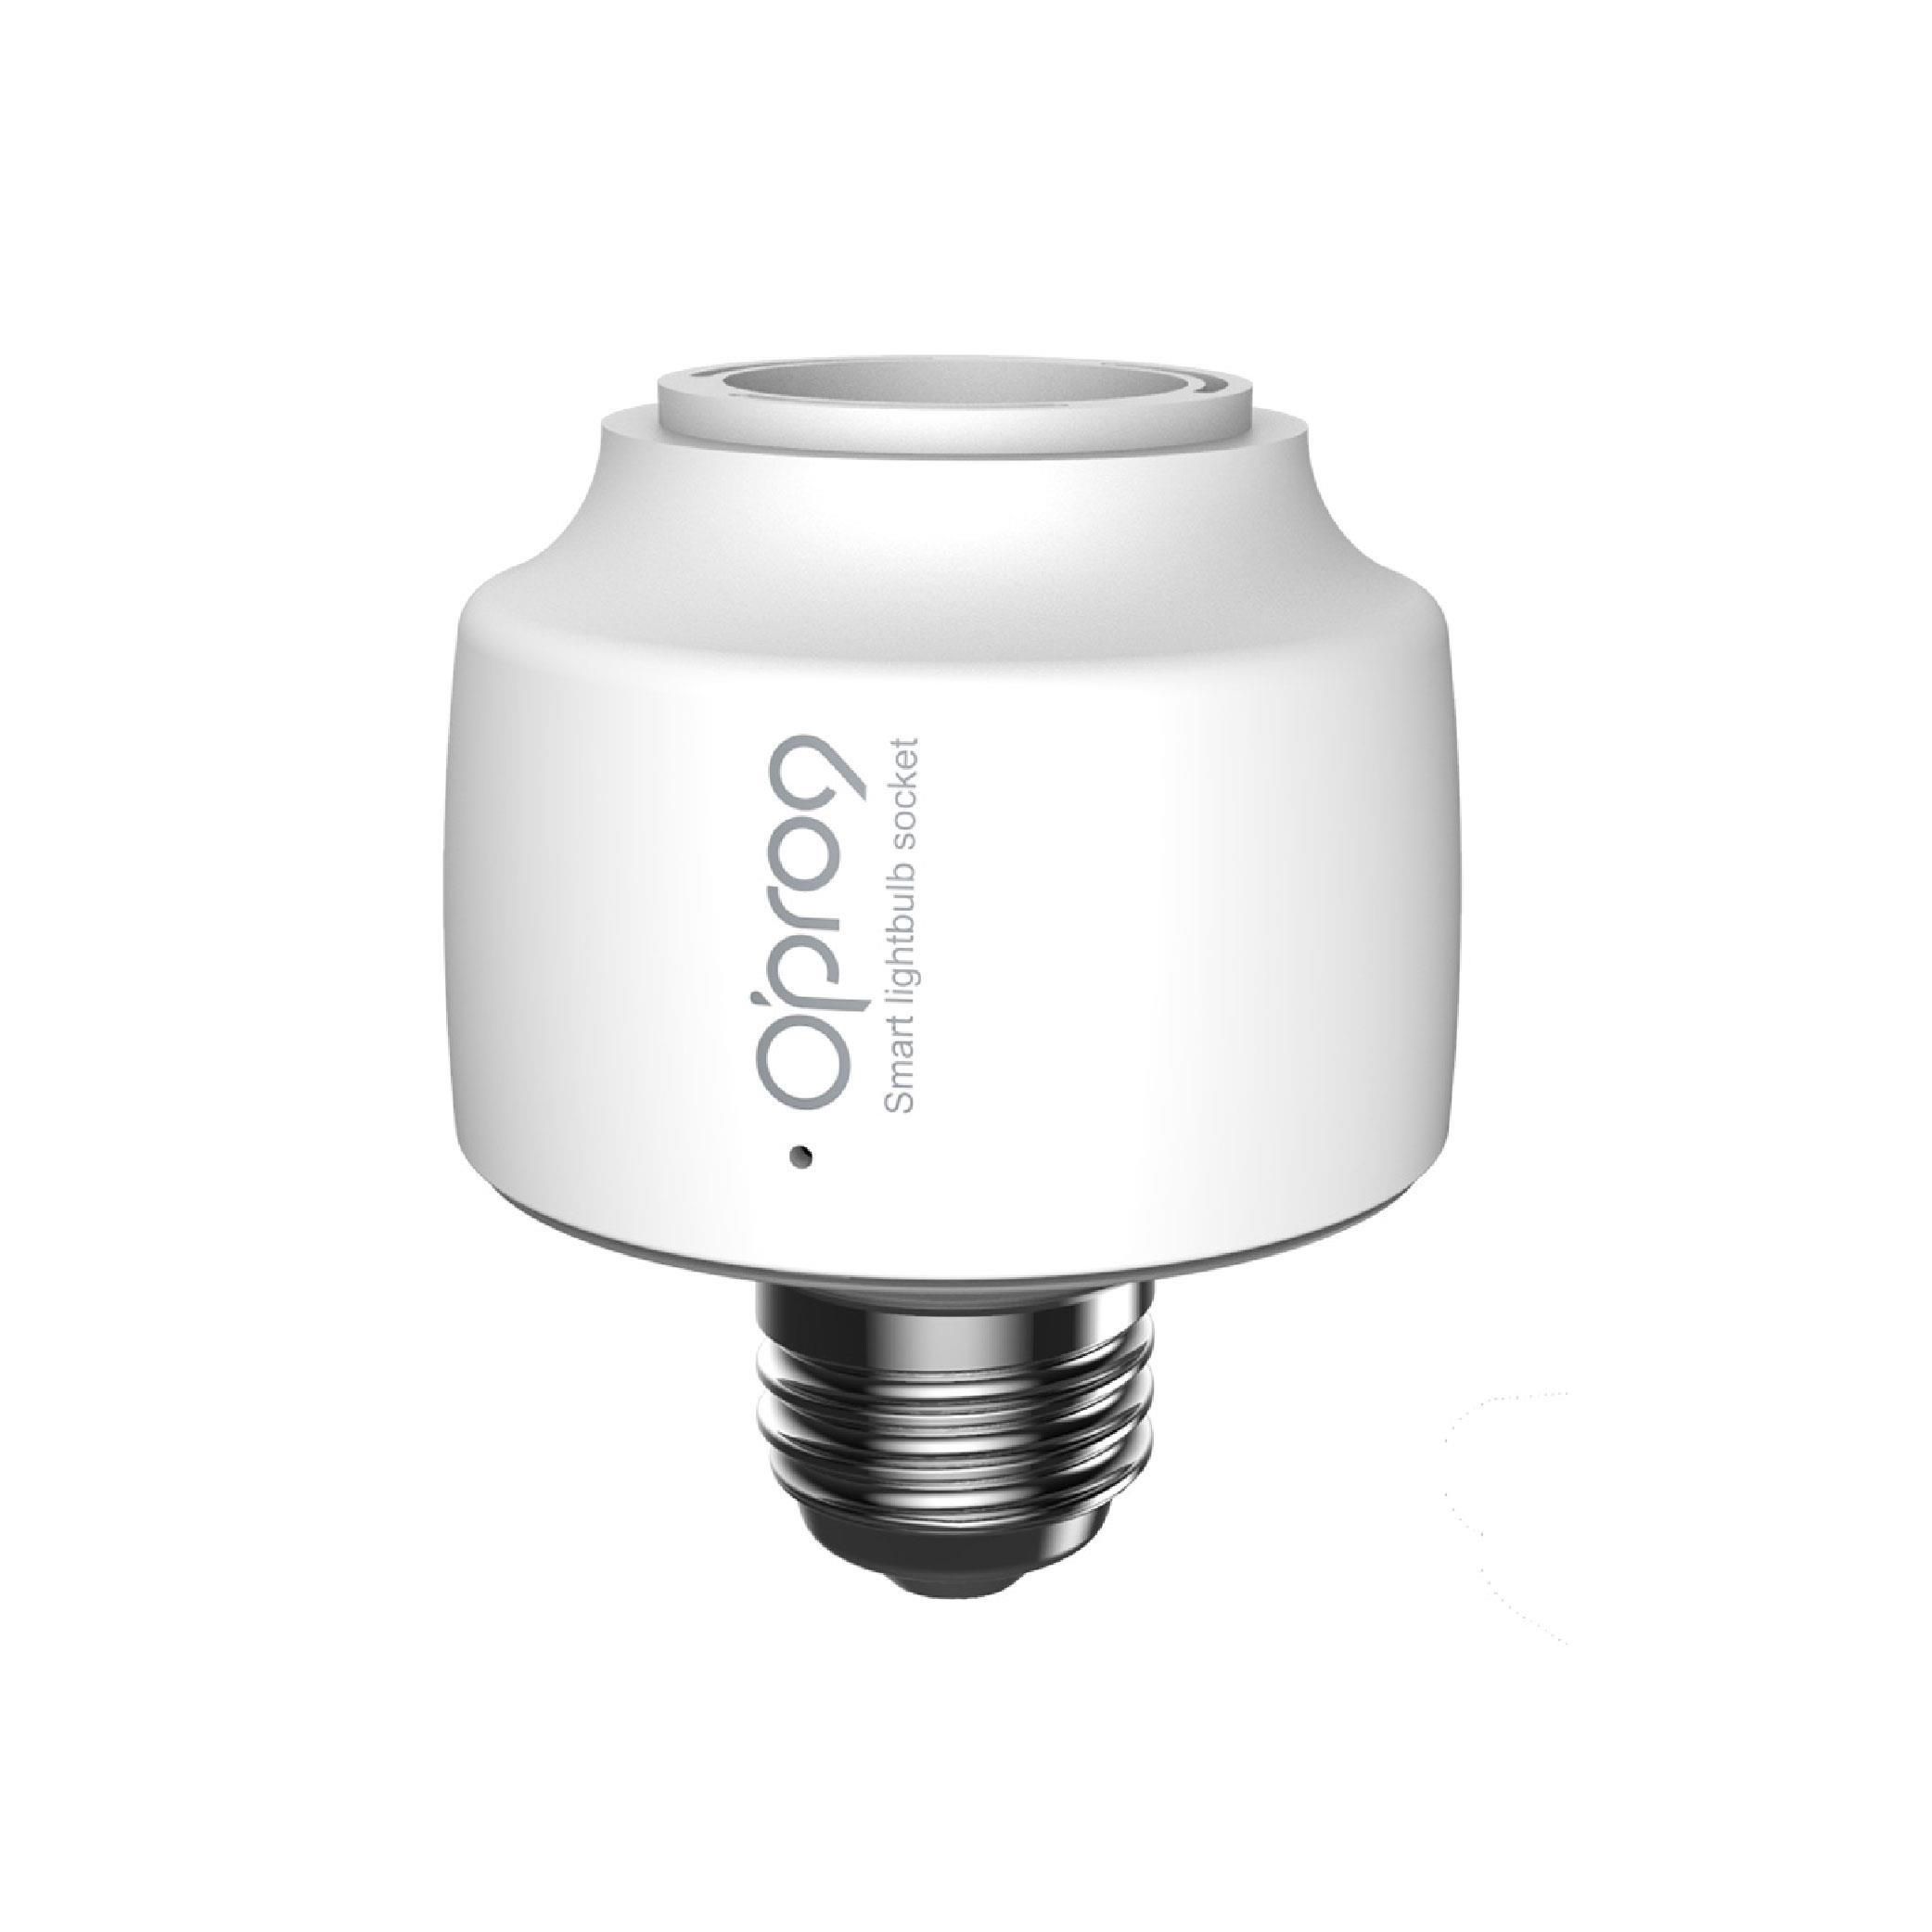 Opro9 智慧燈座-雙系統版 支援Apple HomeKit/ Google Home